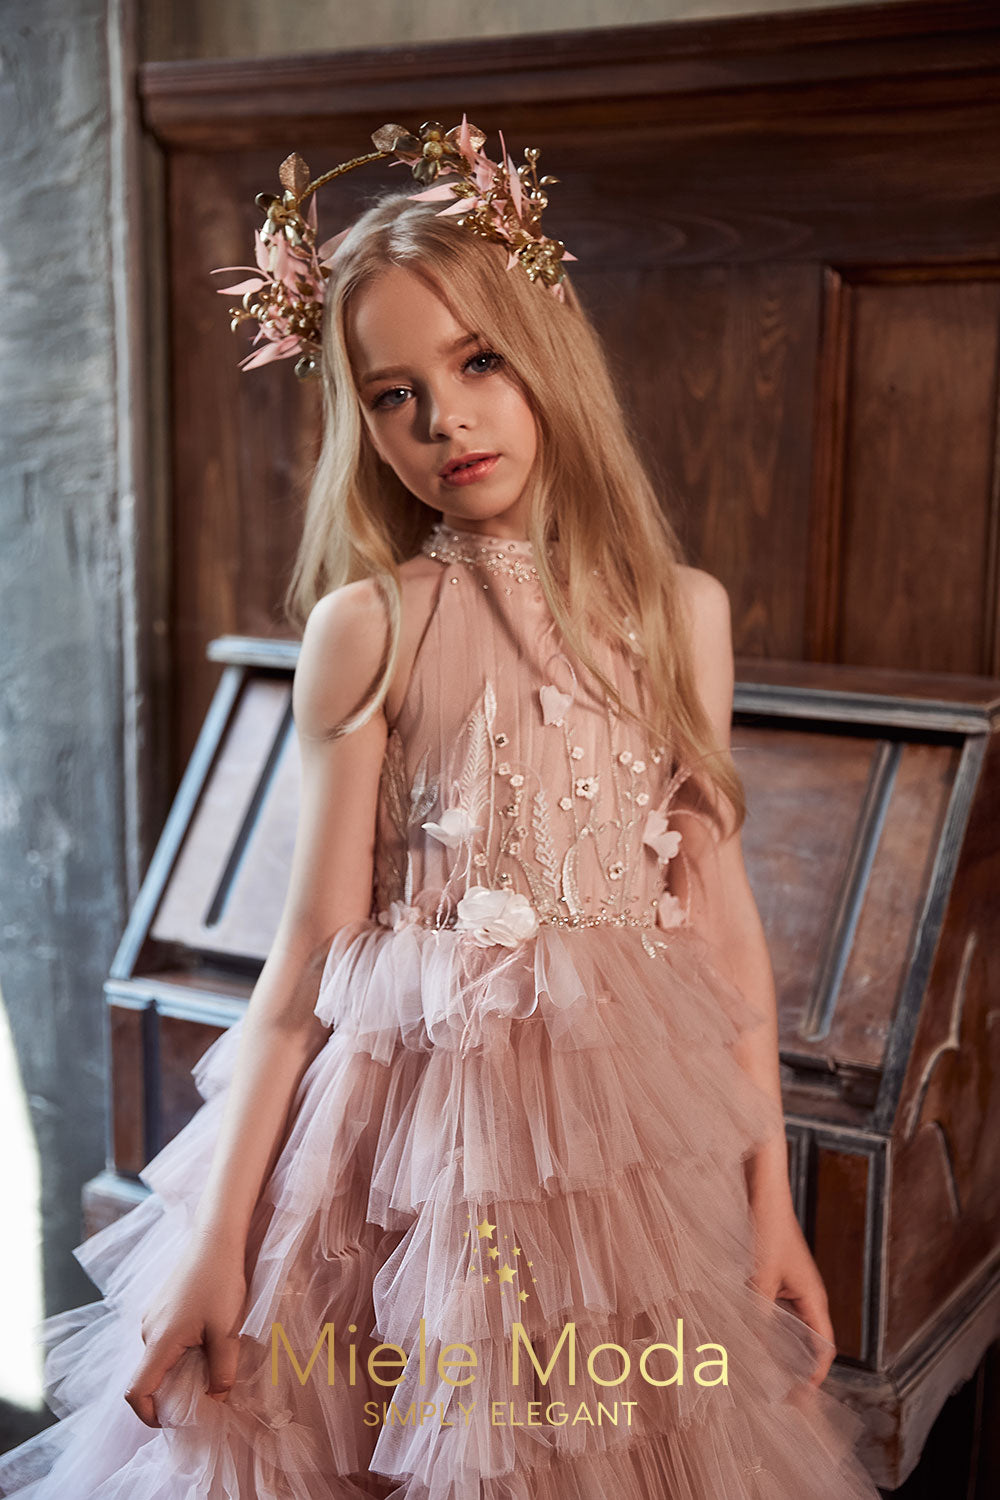 Sylvie Luxury Flower Girl Dress